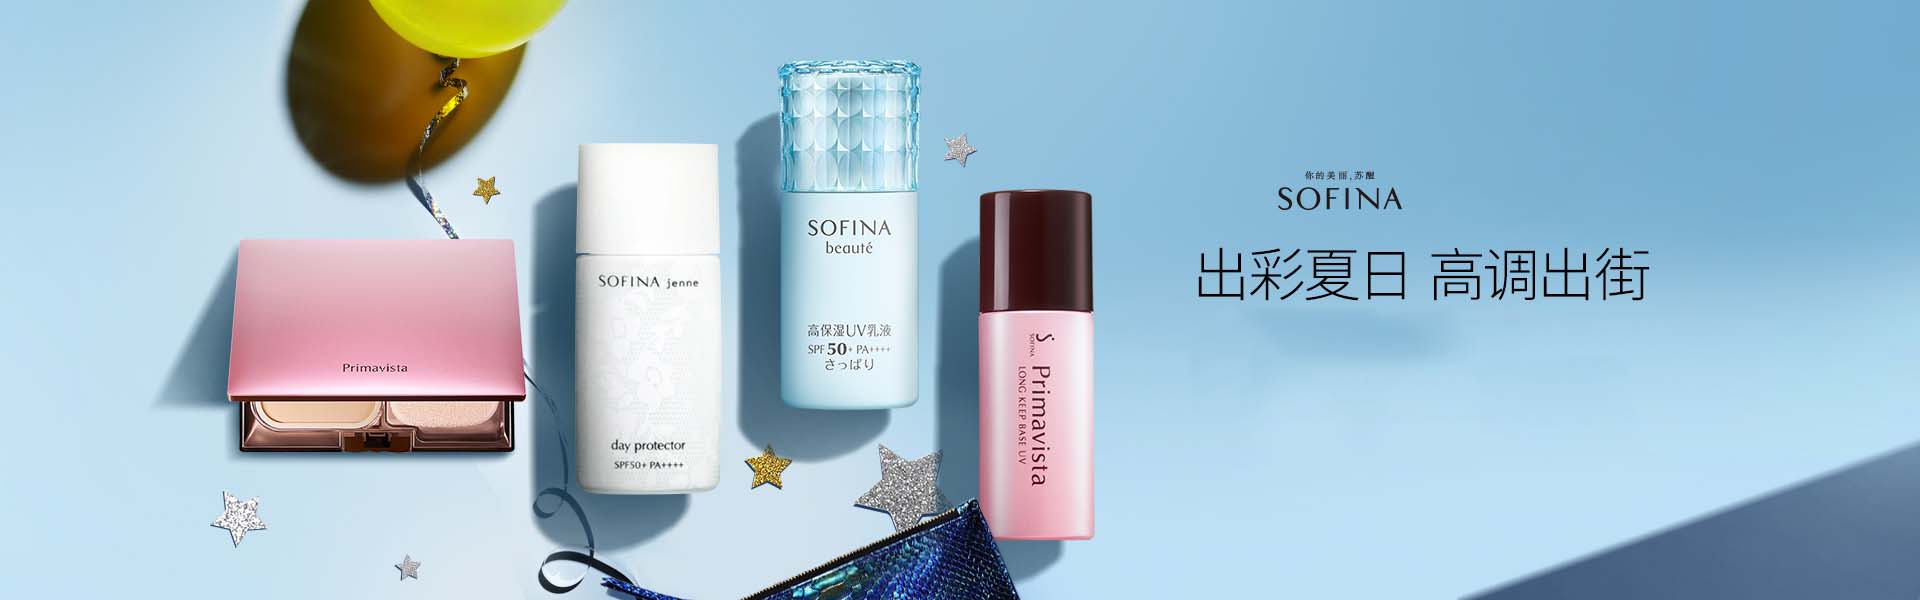 苏菲娜_化妆护肤品成分介绍_SOFINA是哪个国家的品牌_是什么牌子